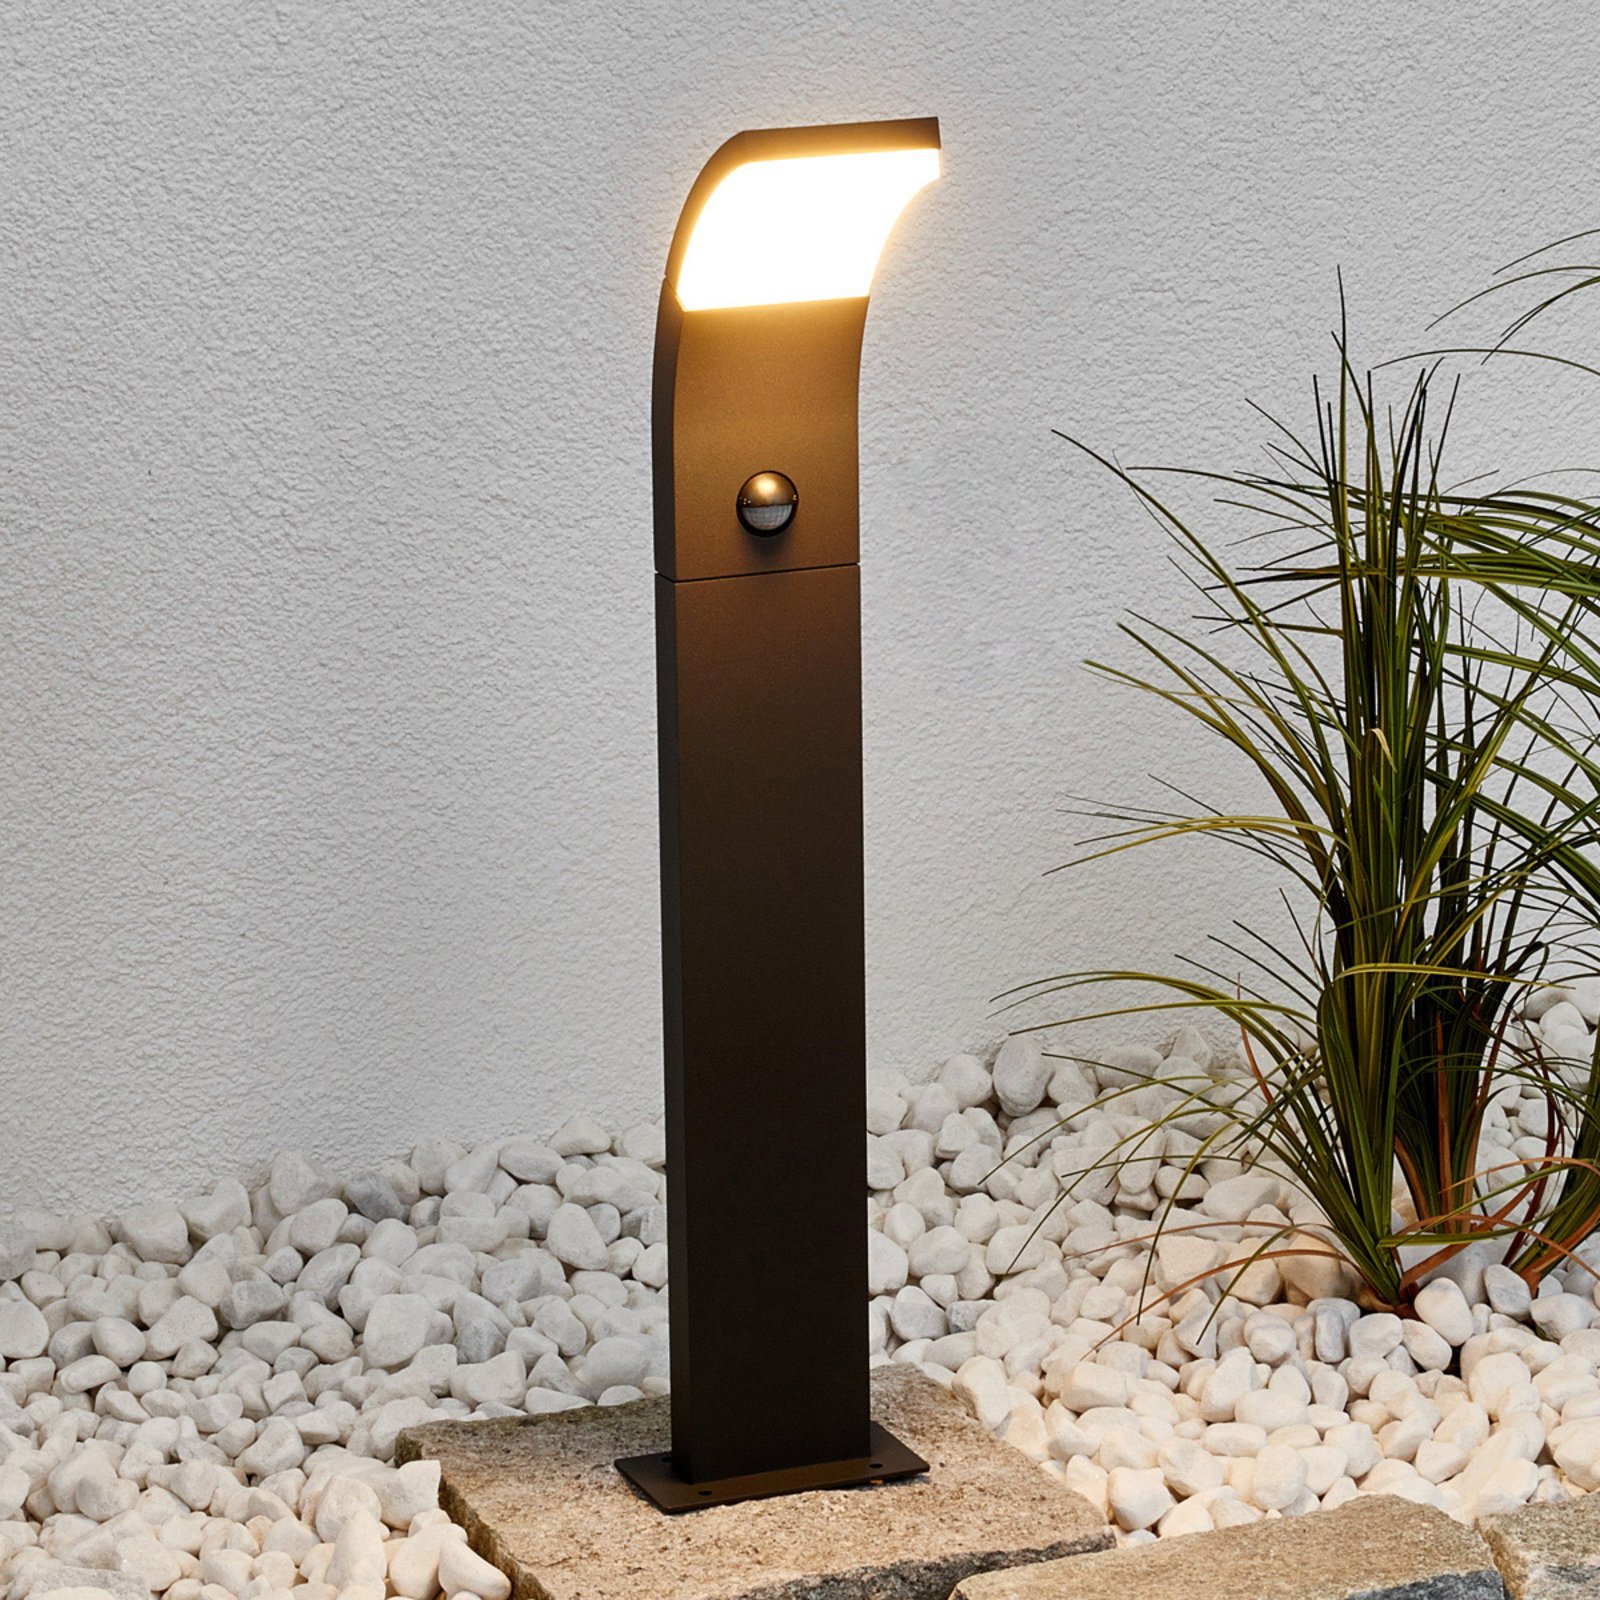 Timm - LED-gatelampe med bevegelsessensor, 60 cm